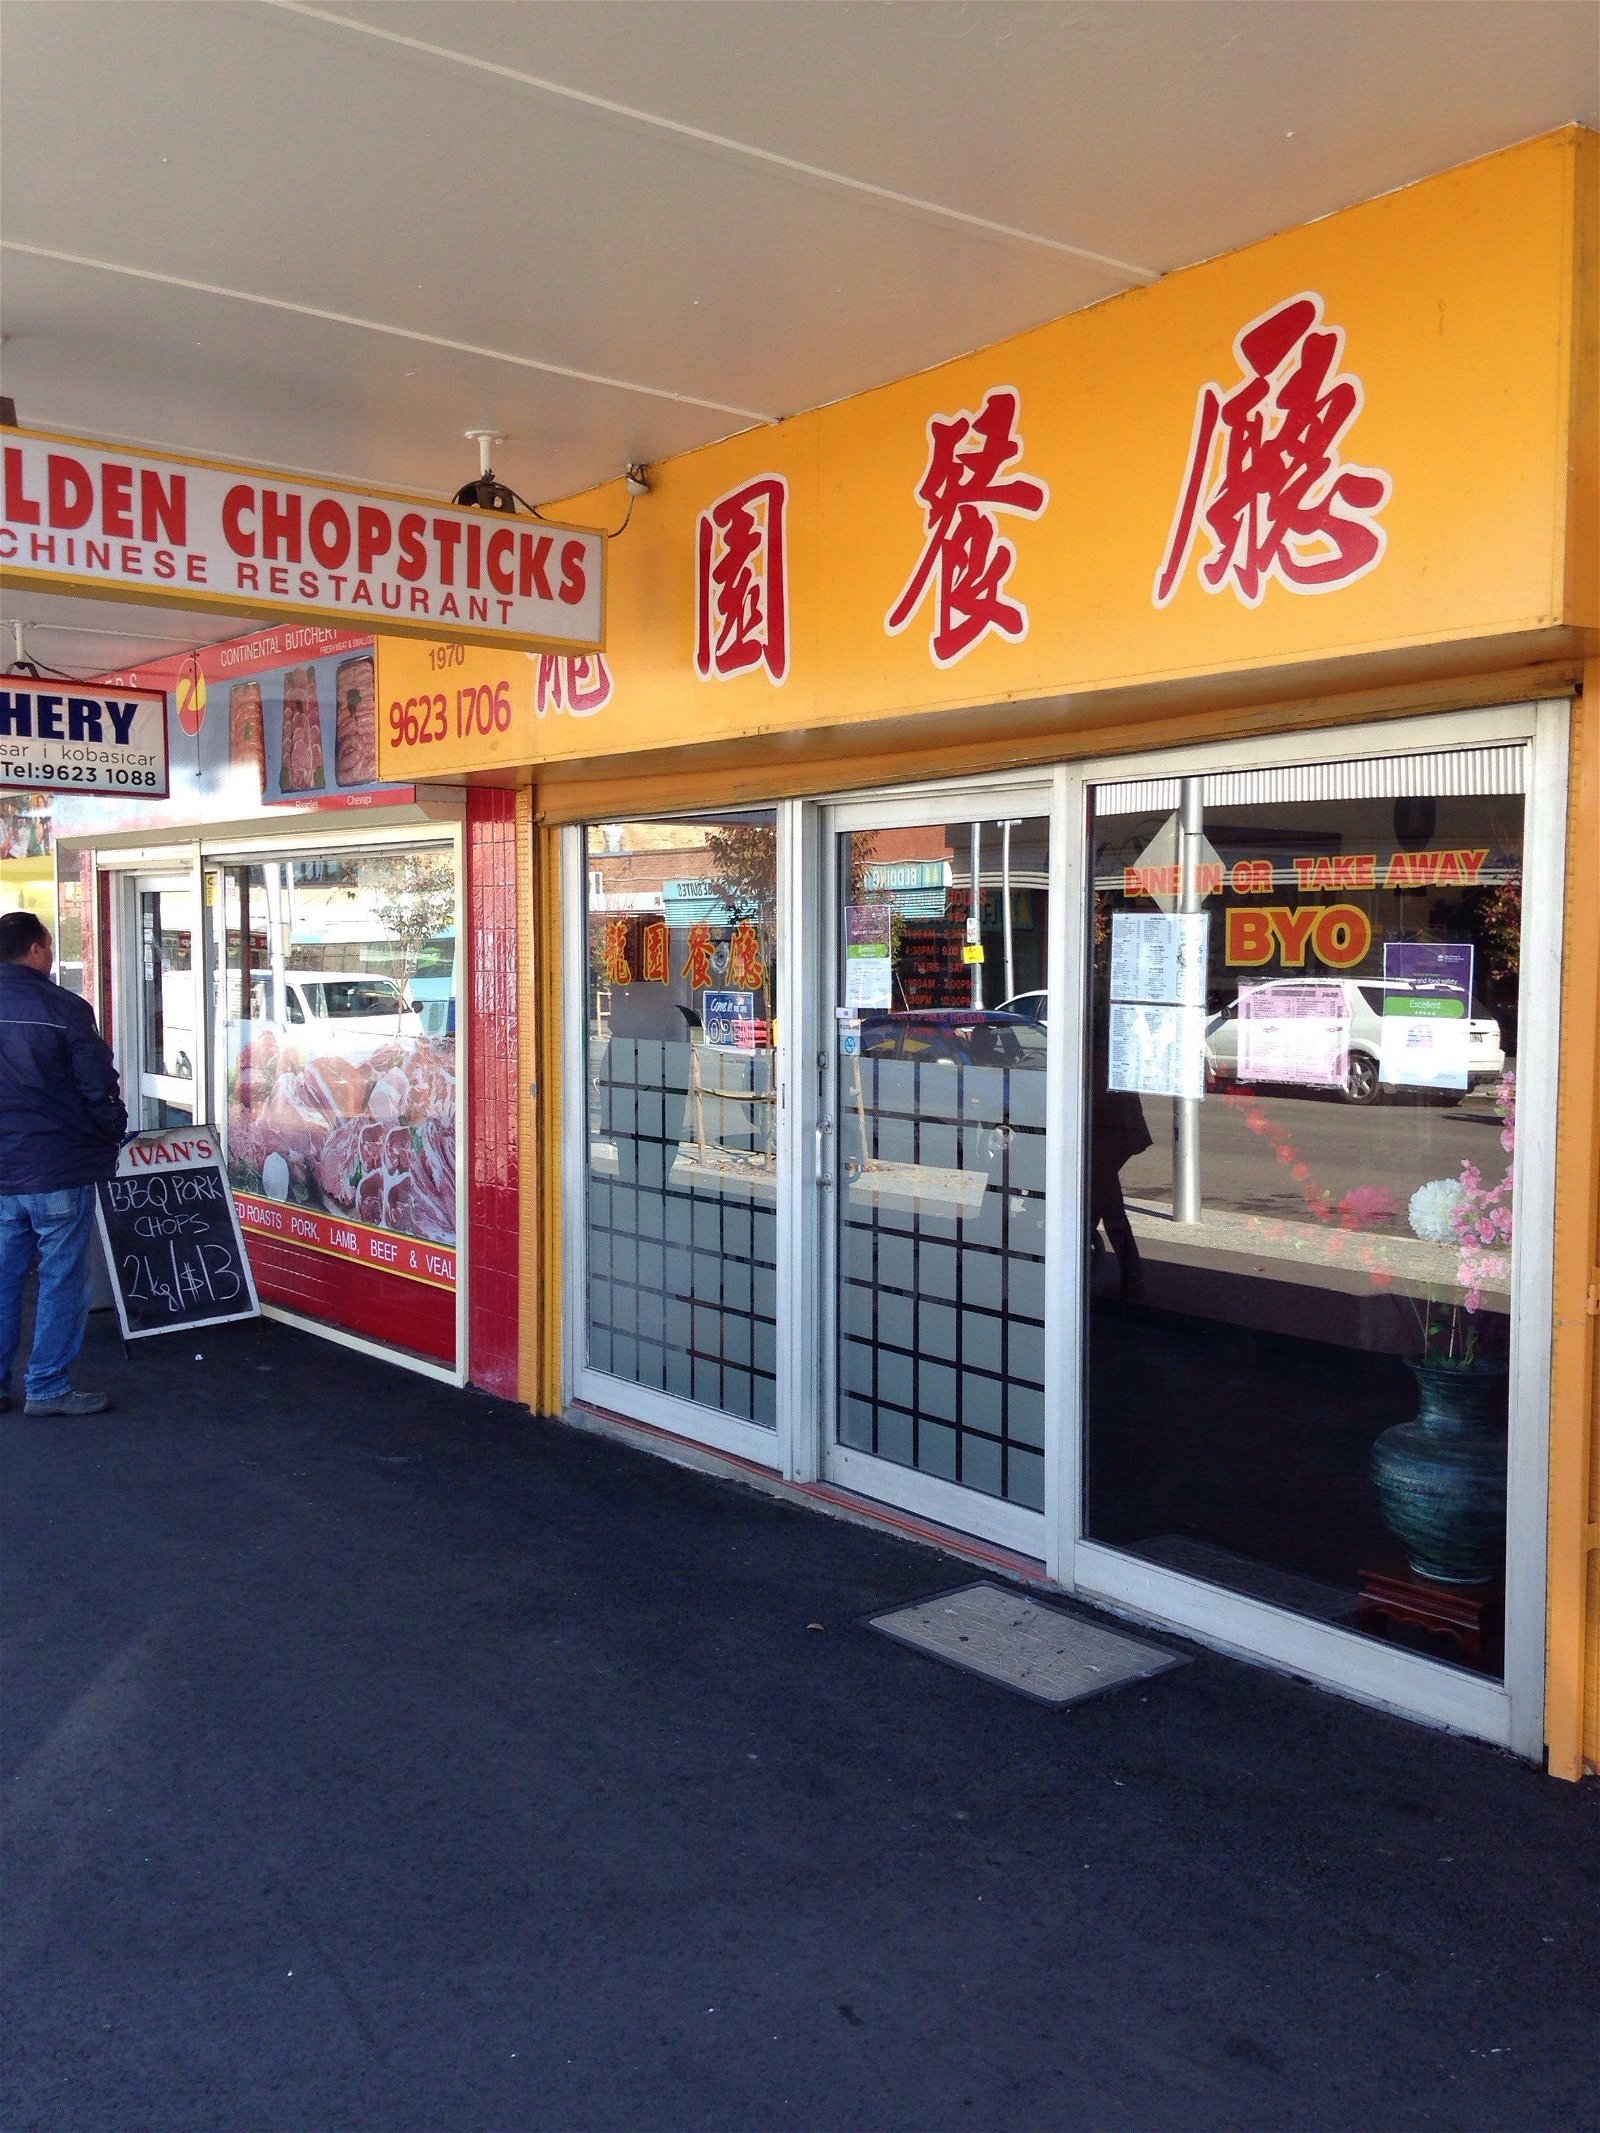 Golden Chopsticks - Food Delivery Shop